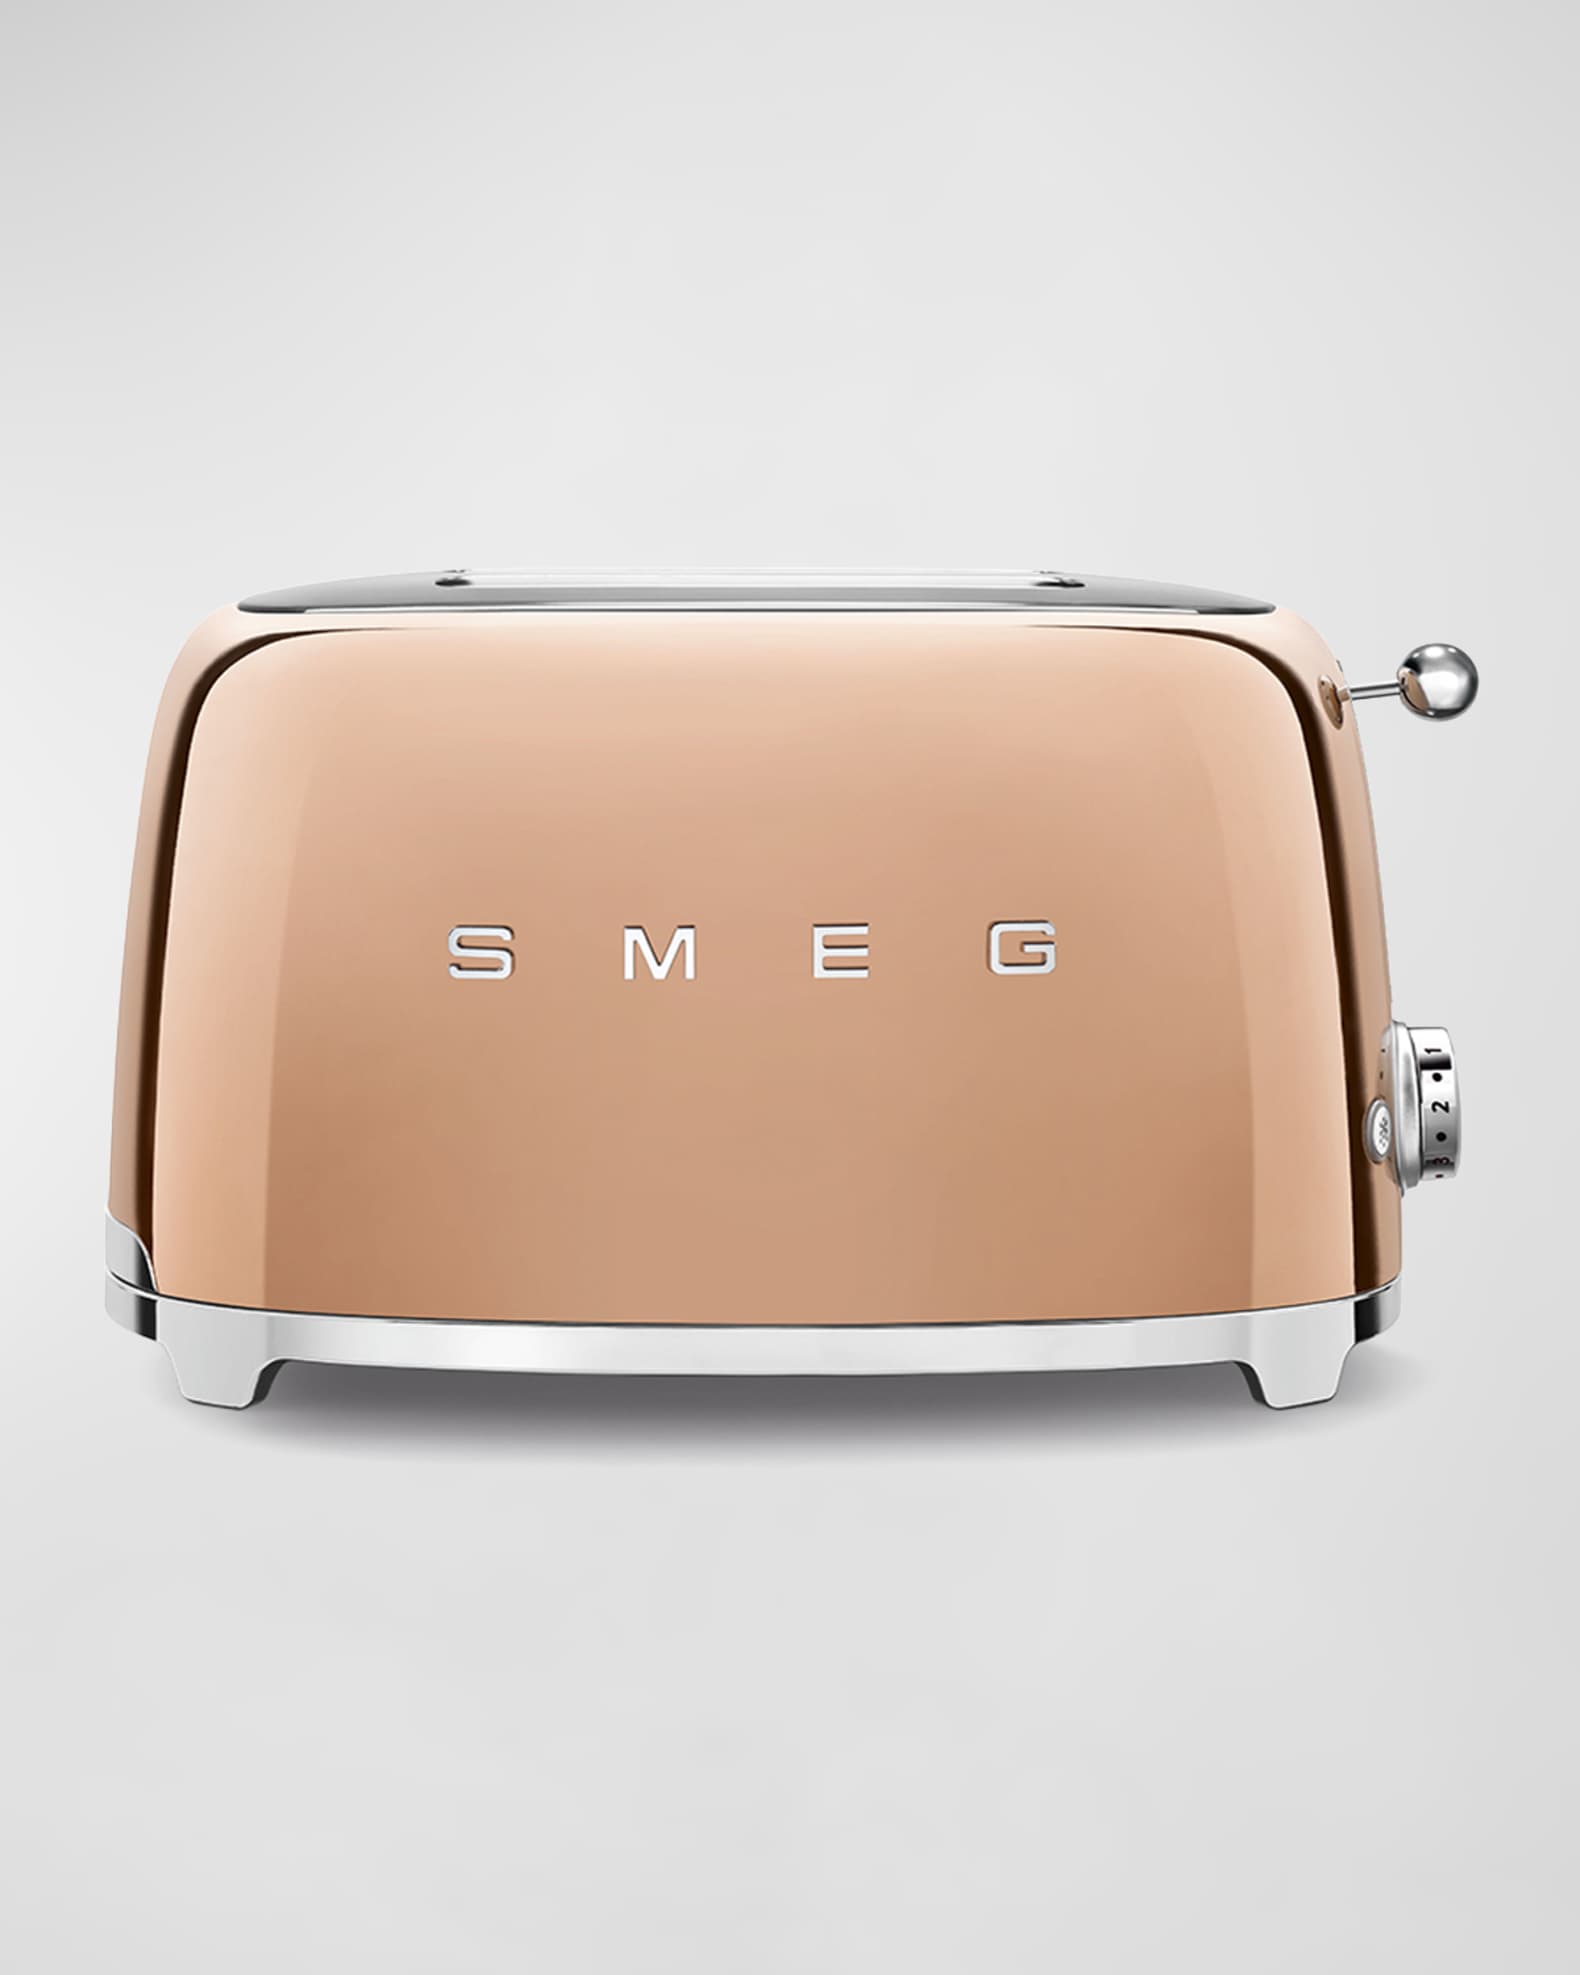 Smeg Retro 2-Slice Toaster | Neiman Marcus